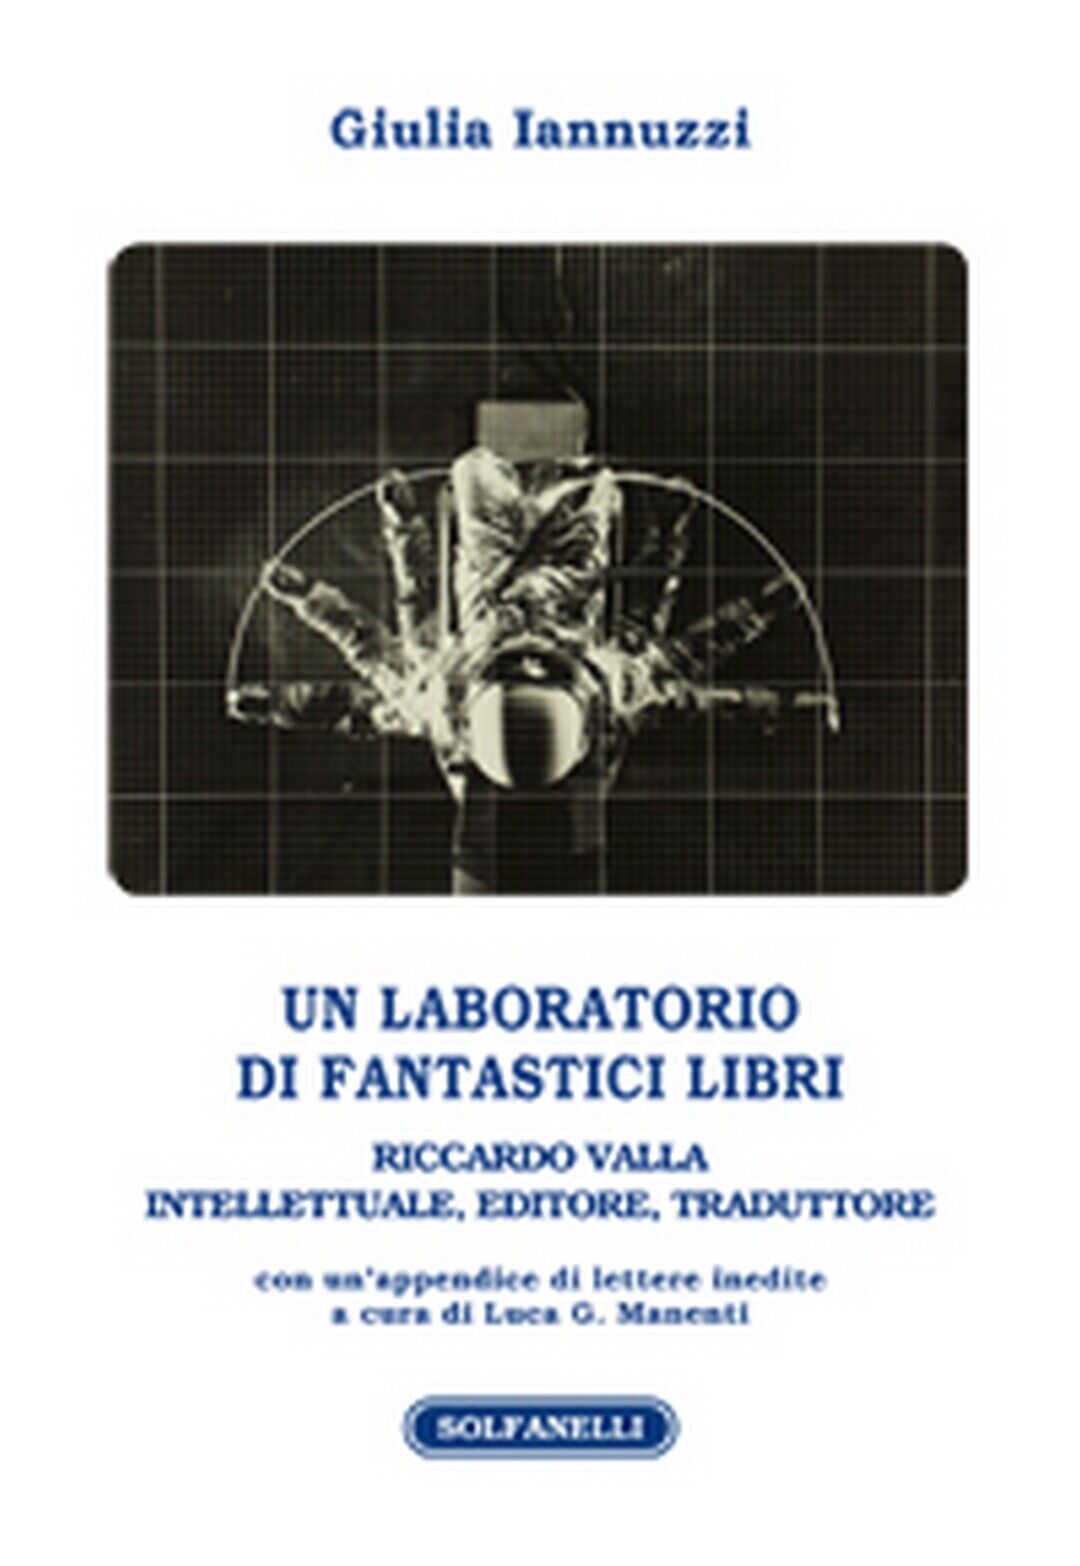 UN LABORATORIO DI FANTASTICI LIBRI  di Giulia Iannuzzi,  Solfanelli Edizioni